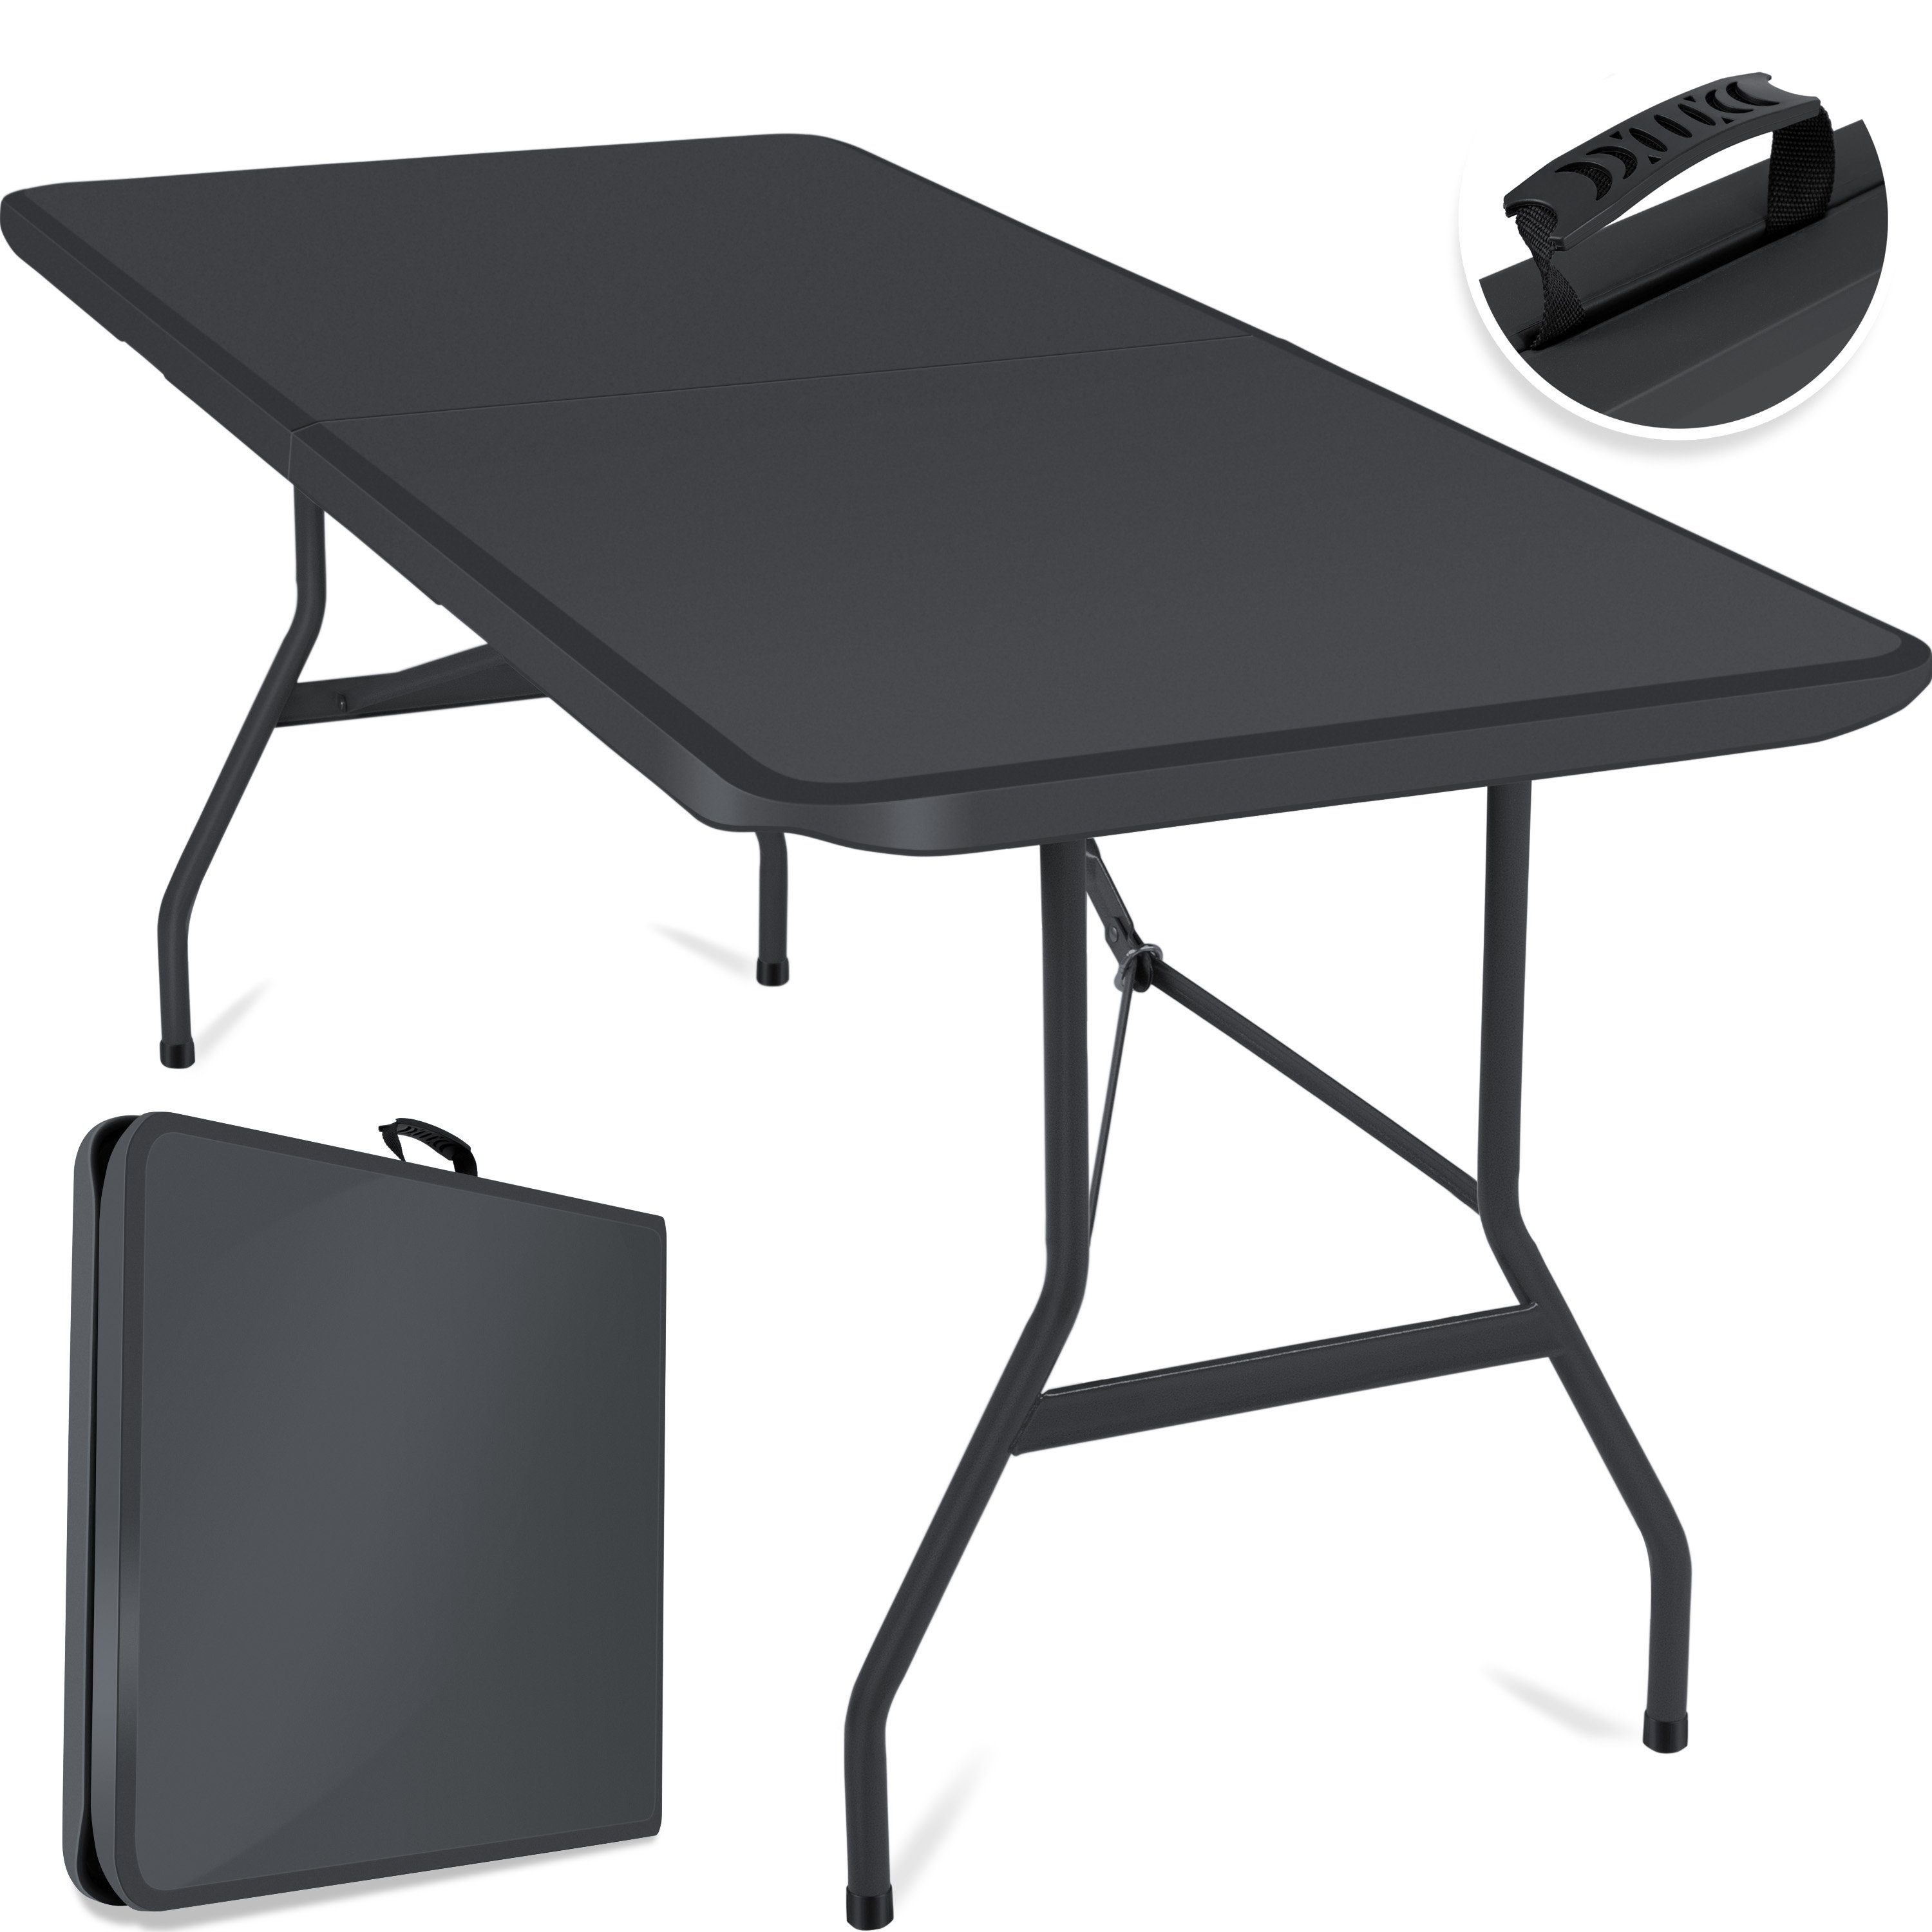 KESSER Tabletttisch, Buffettisch Tisch klappbar Kunststoff 183x76 cm Campingtisch anthrazit | Tabletttische